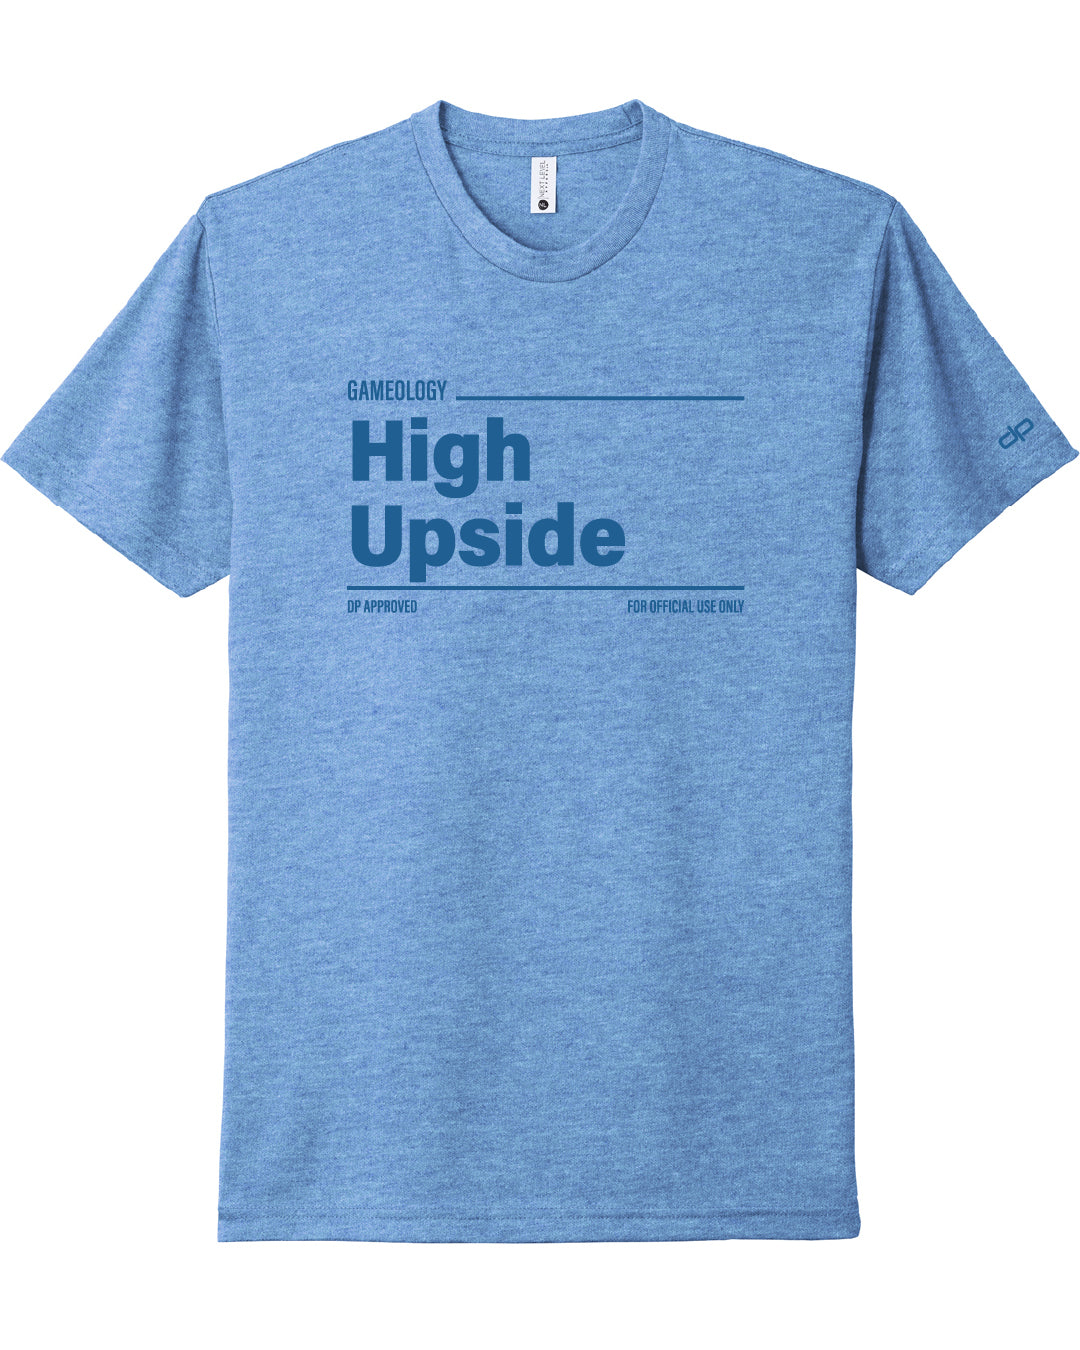 High Upside Gameology T-Shirt